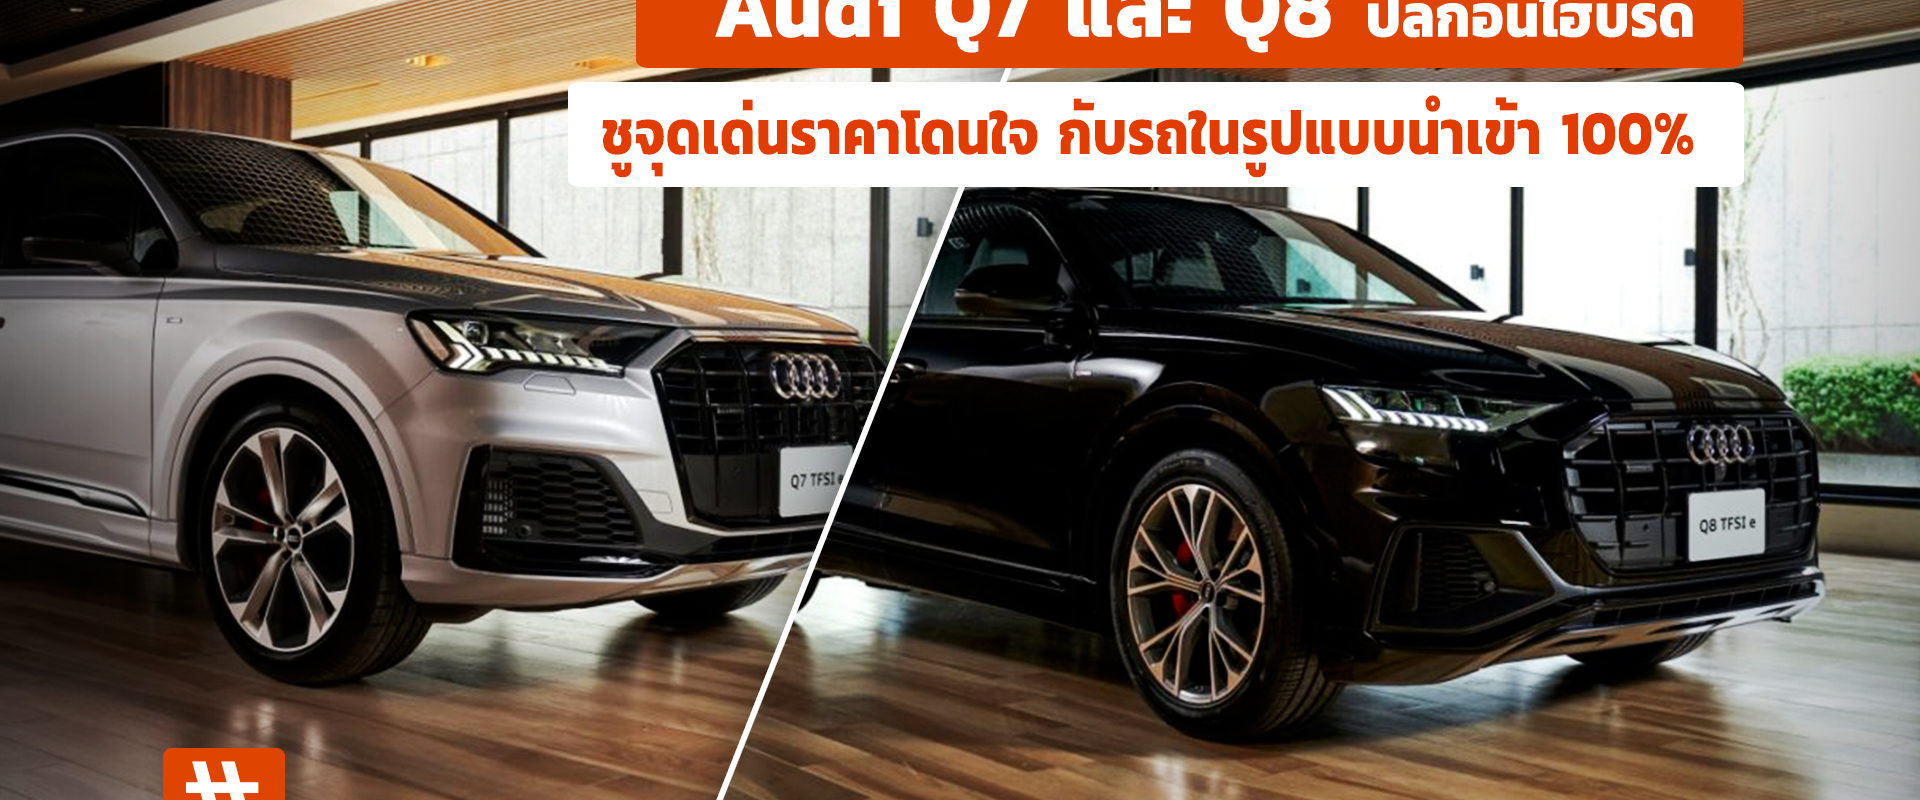 Audi Q7 และ Q8